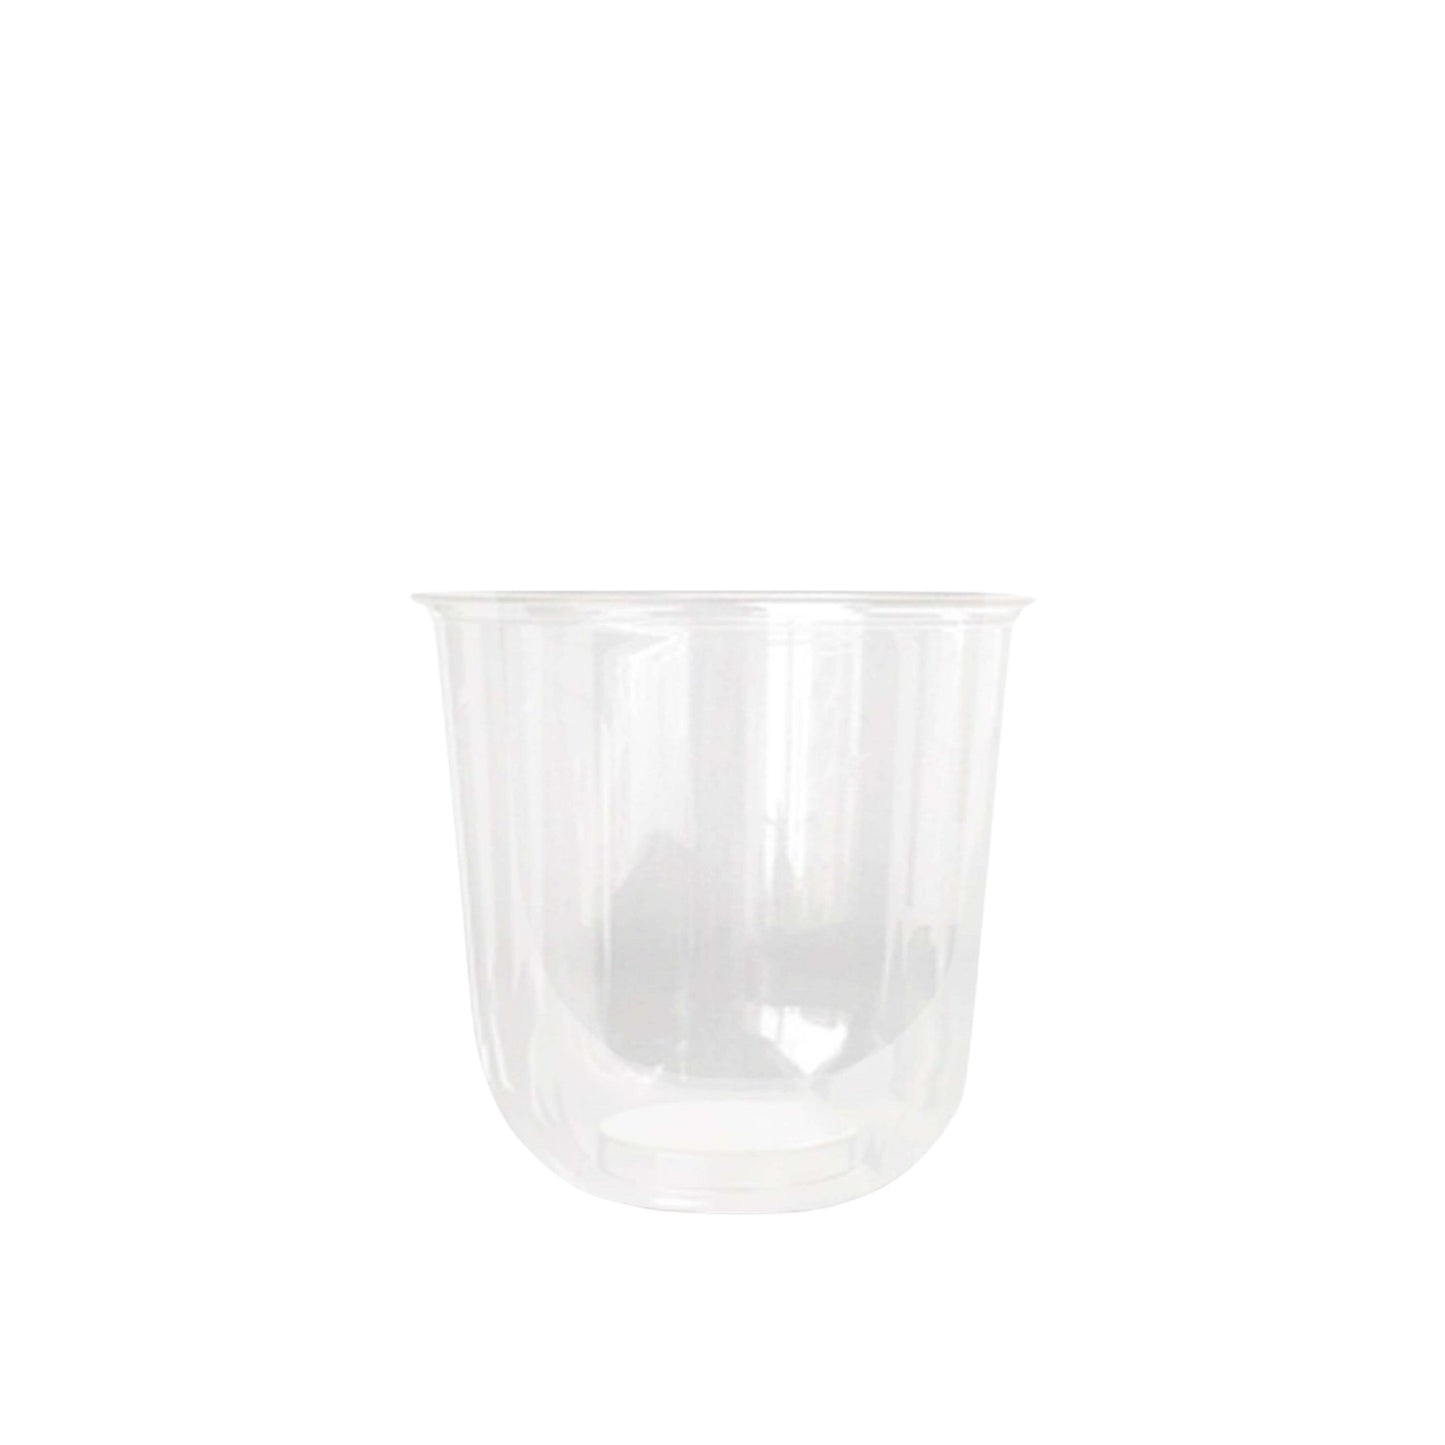 Kreme City Disposable PP Plastic U-Cups 95mm 50s - Kreme City Supplies